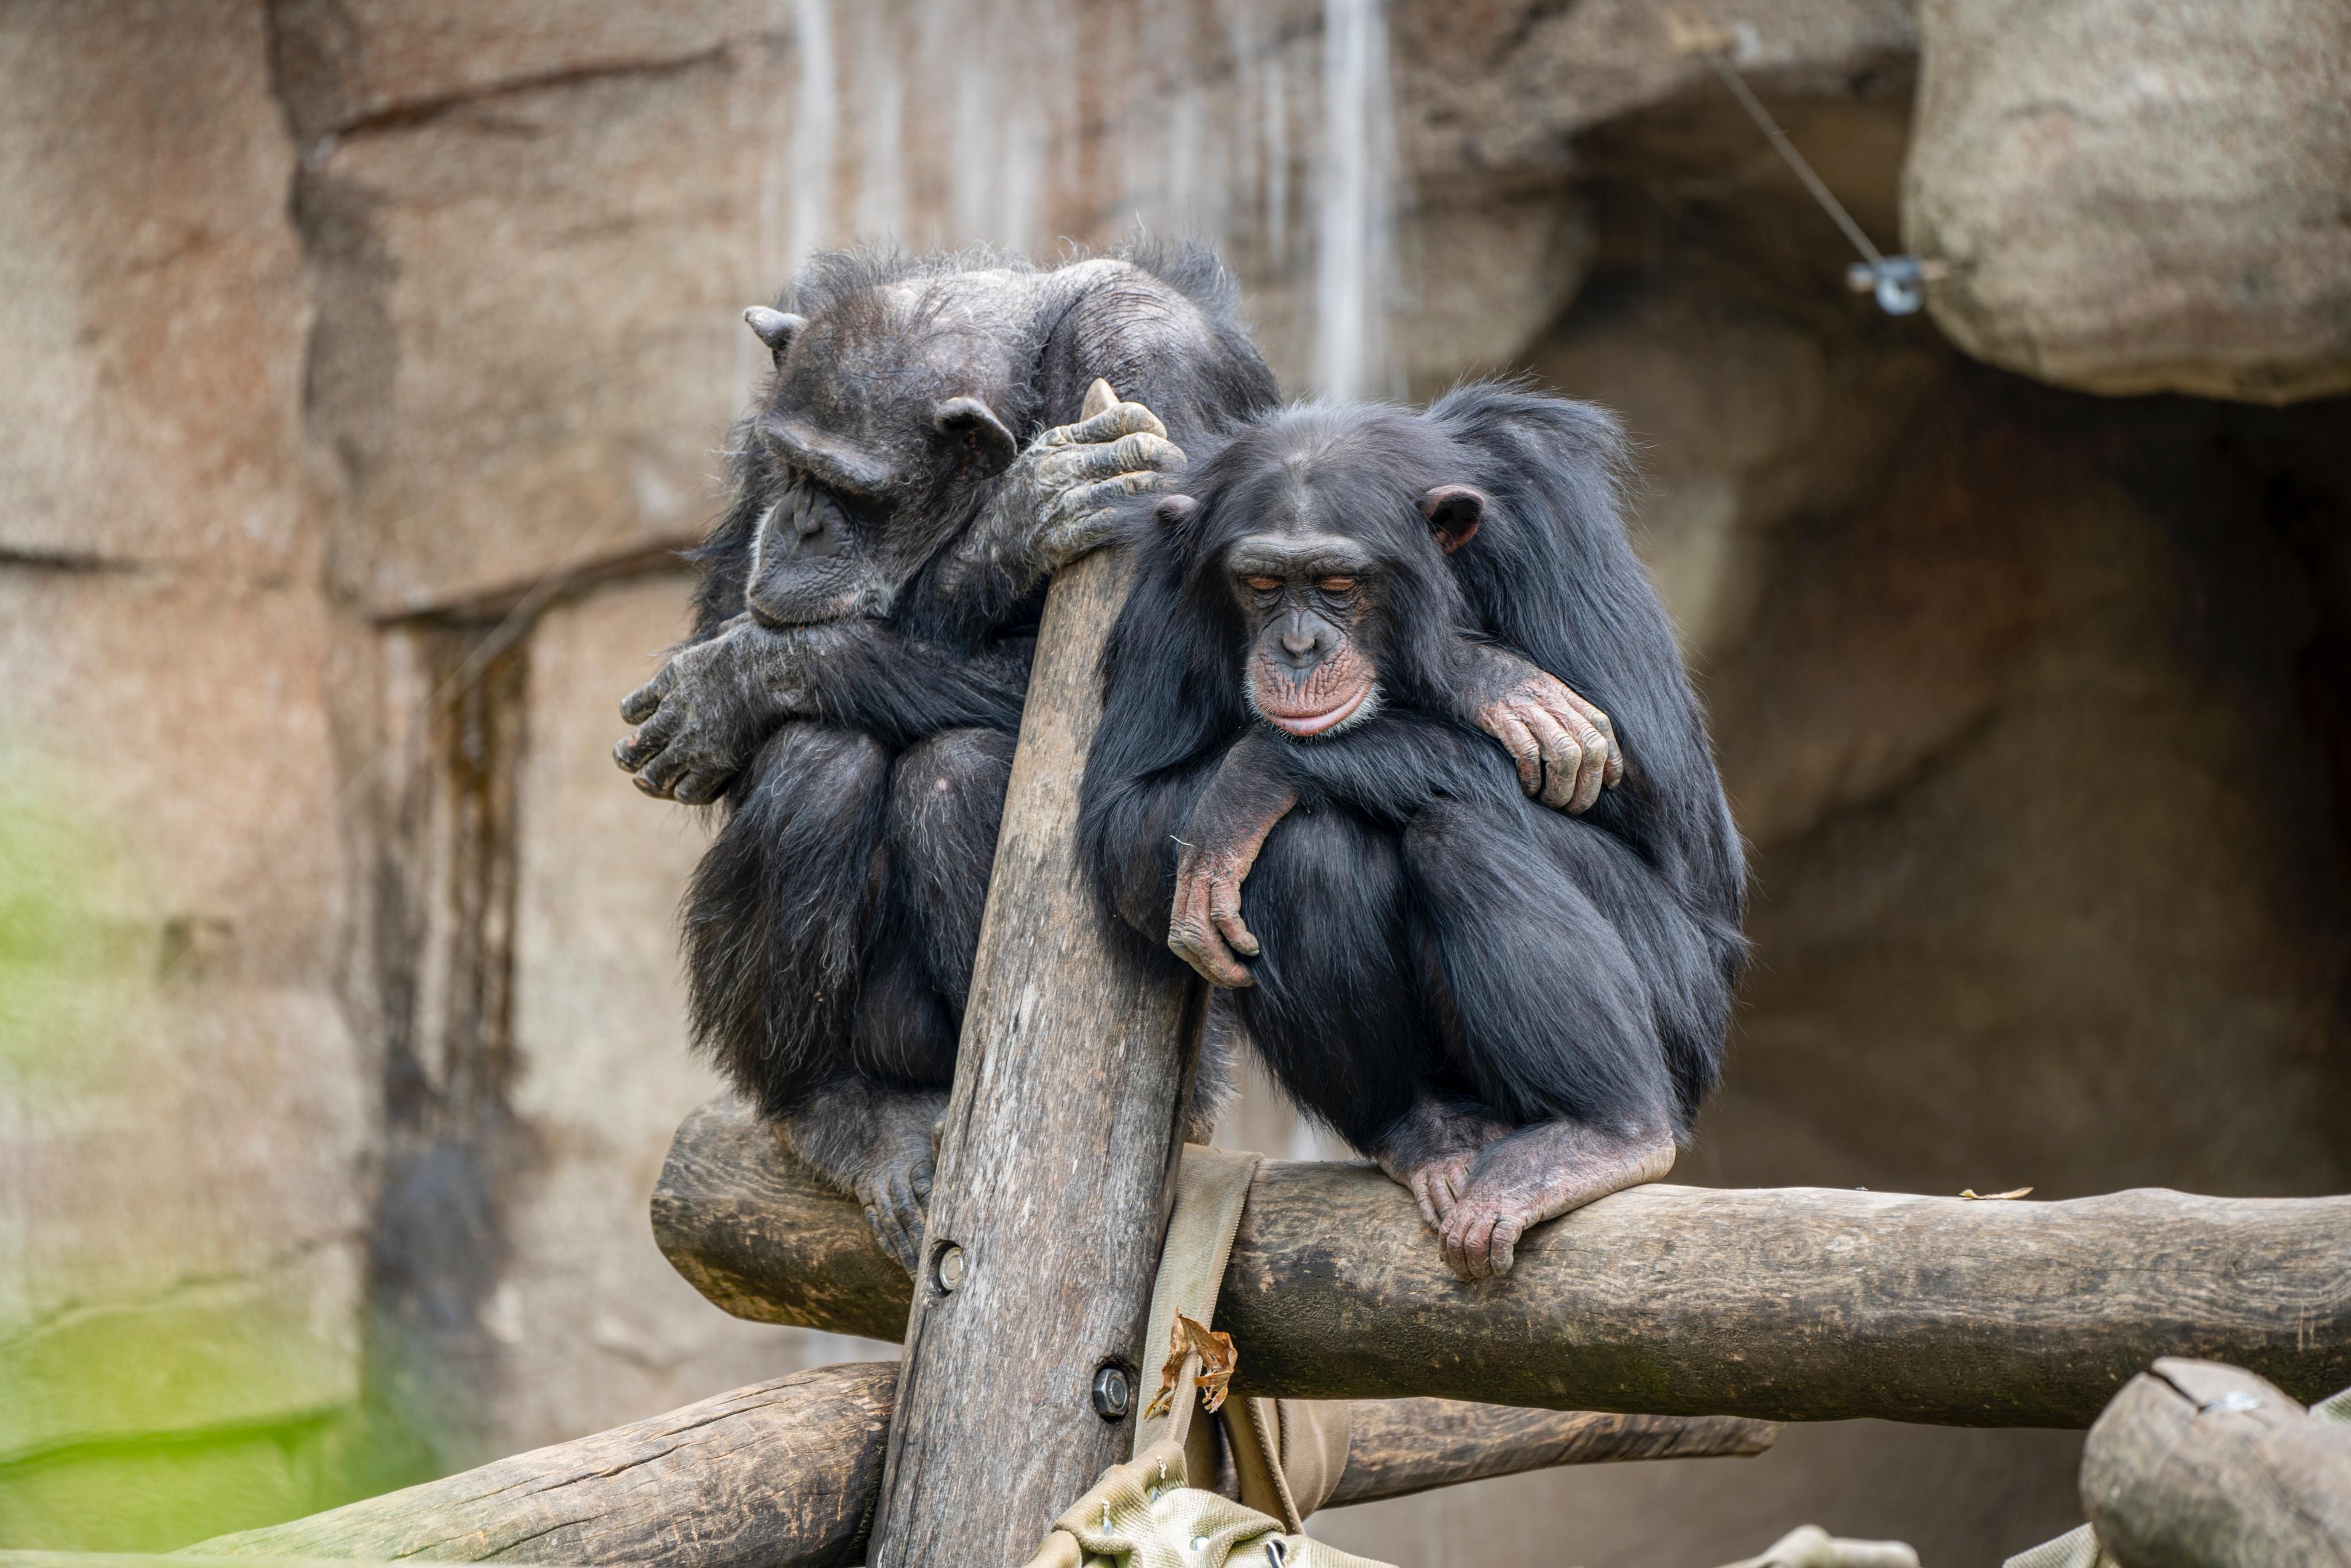 Majmok unatkoznak egy fán valószínűleg egy állatkertben 